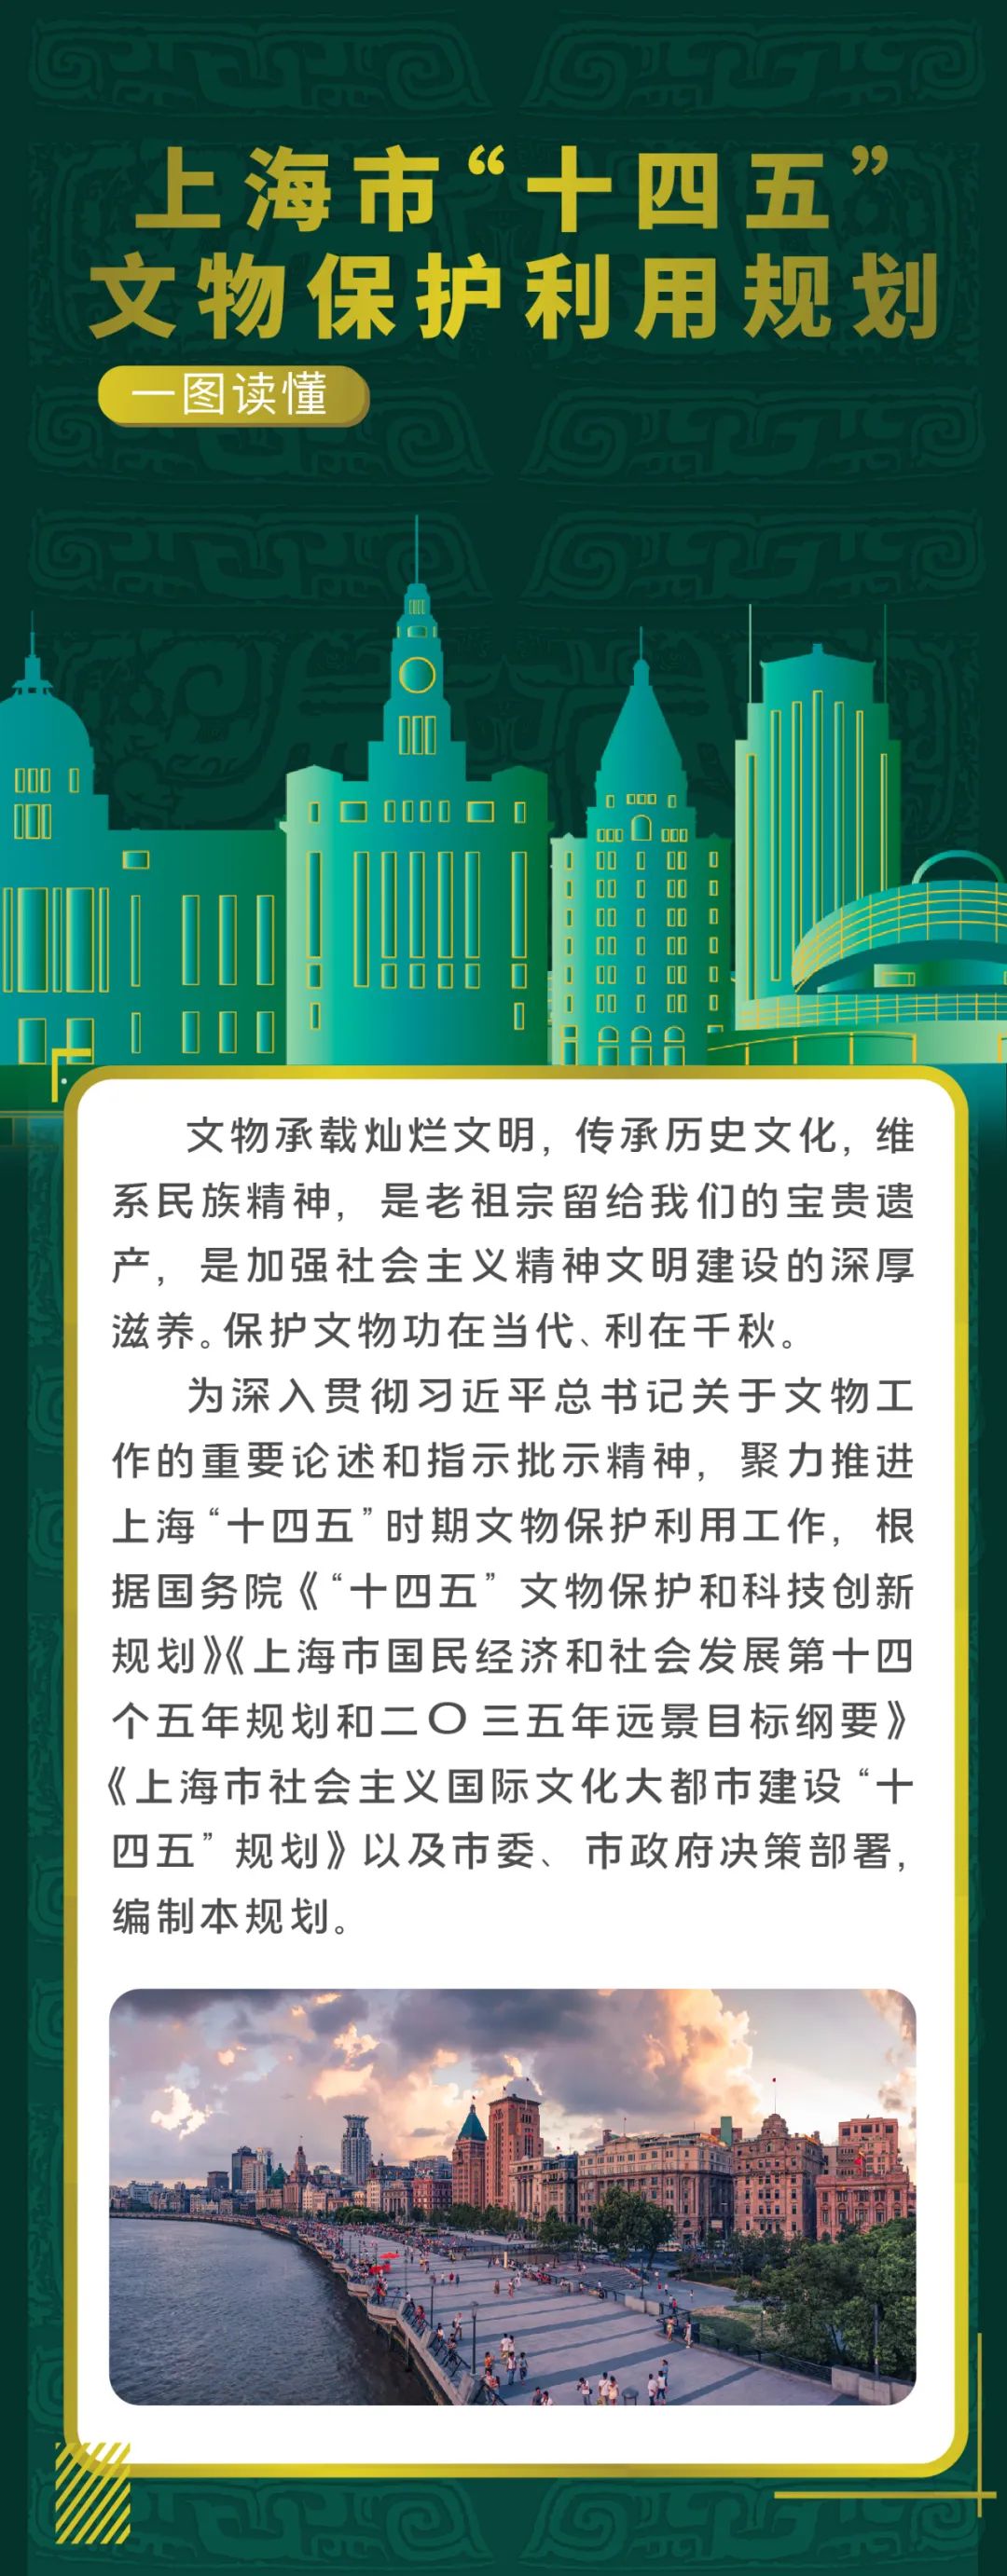 一图读懂上海市“十四五”文物保护利用规划1.jpg